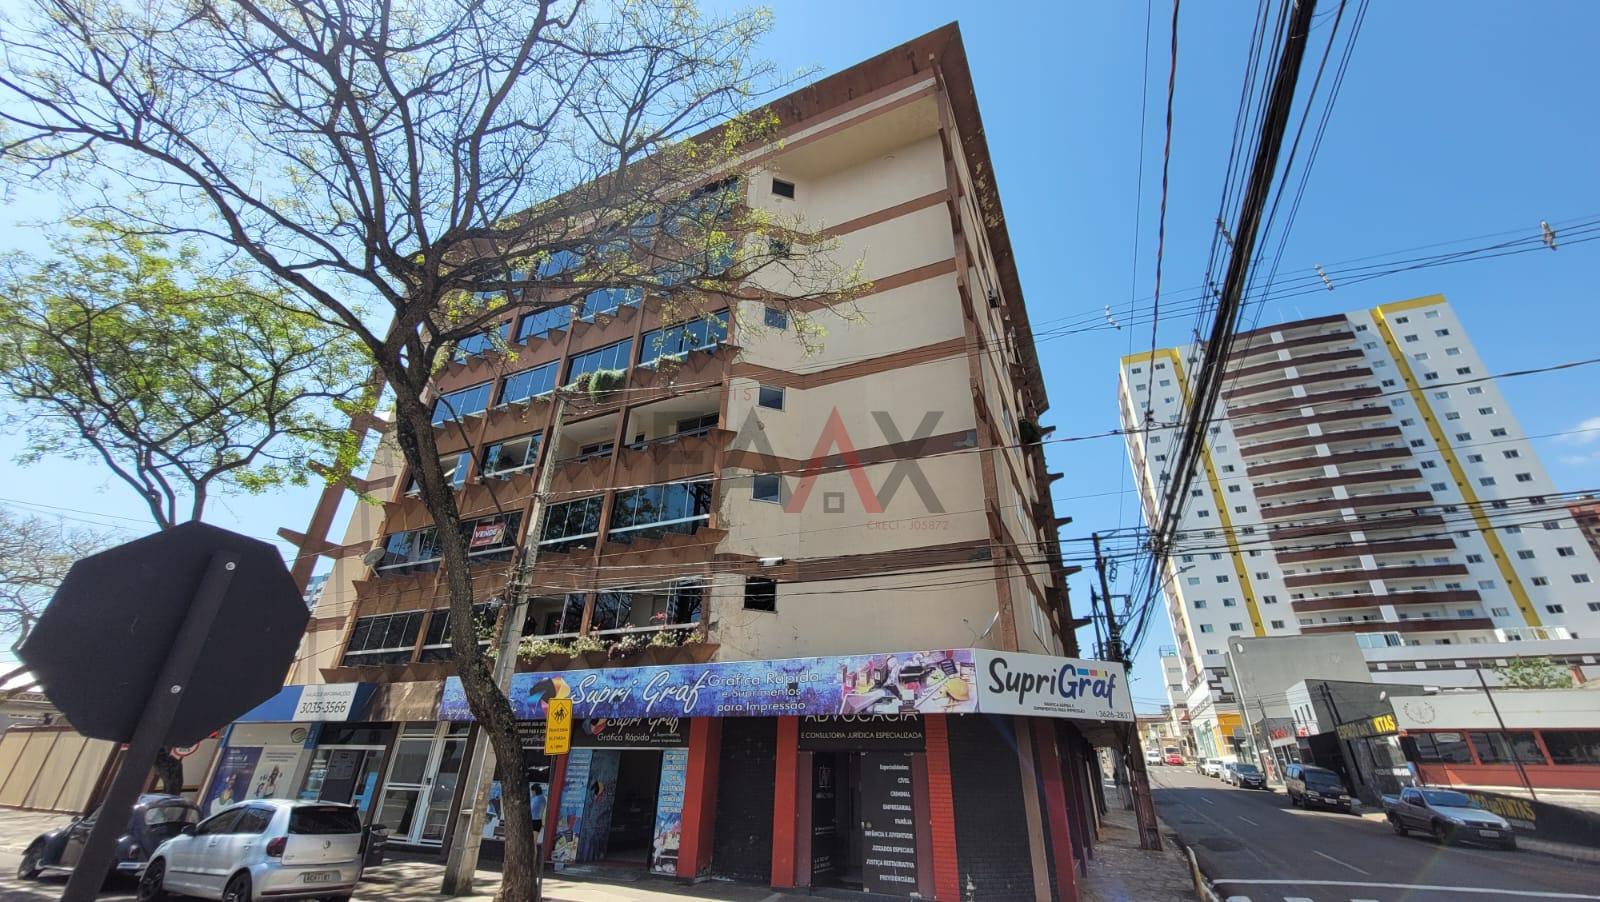 Apartamento com 3 dormitórios à venda,145.37 m , CENTRO, GUARAPUAVA - PR